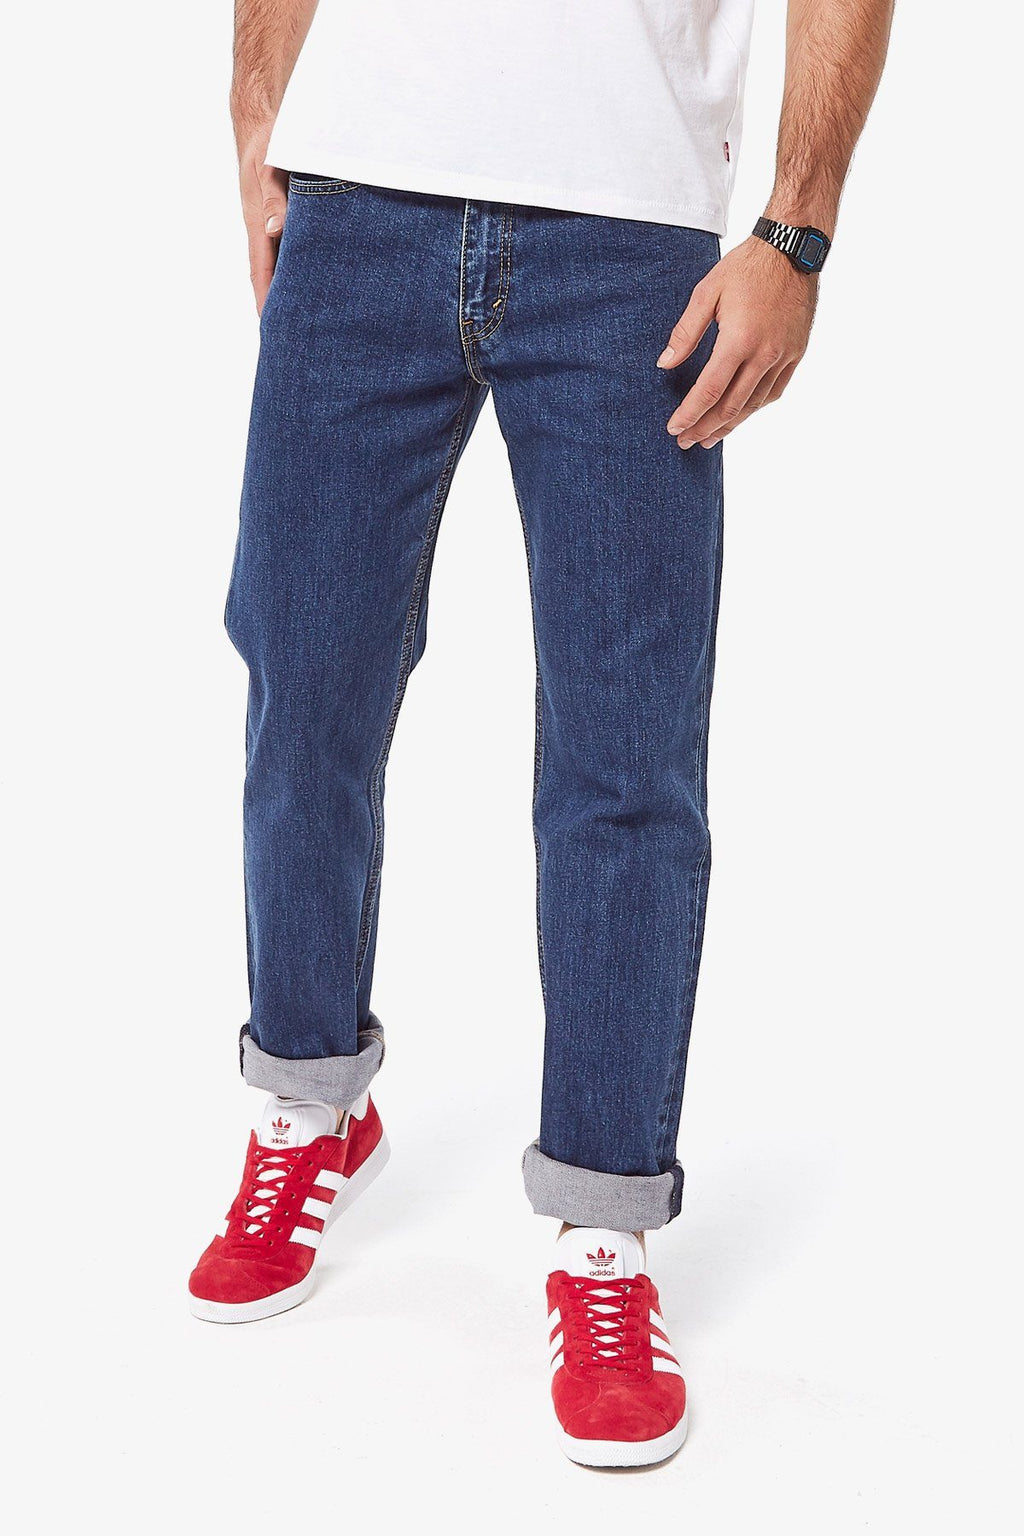 Levis | 516 Straight Jeans – Peter Shearer Menswear